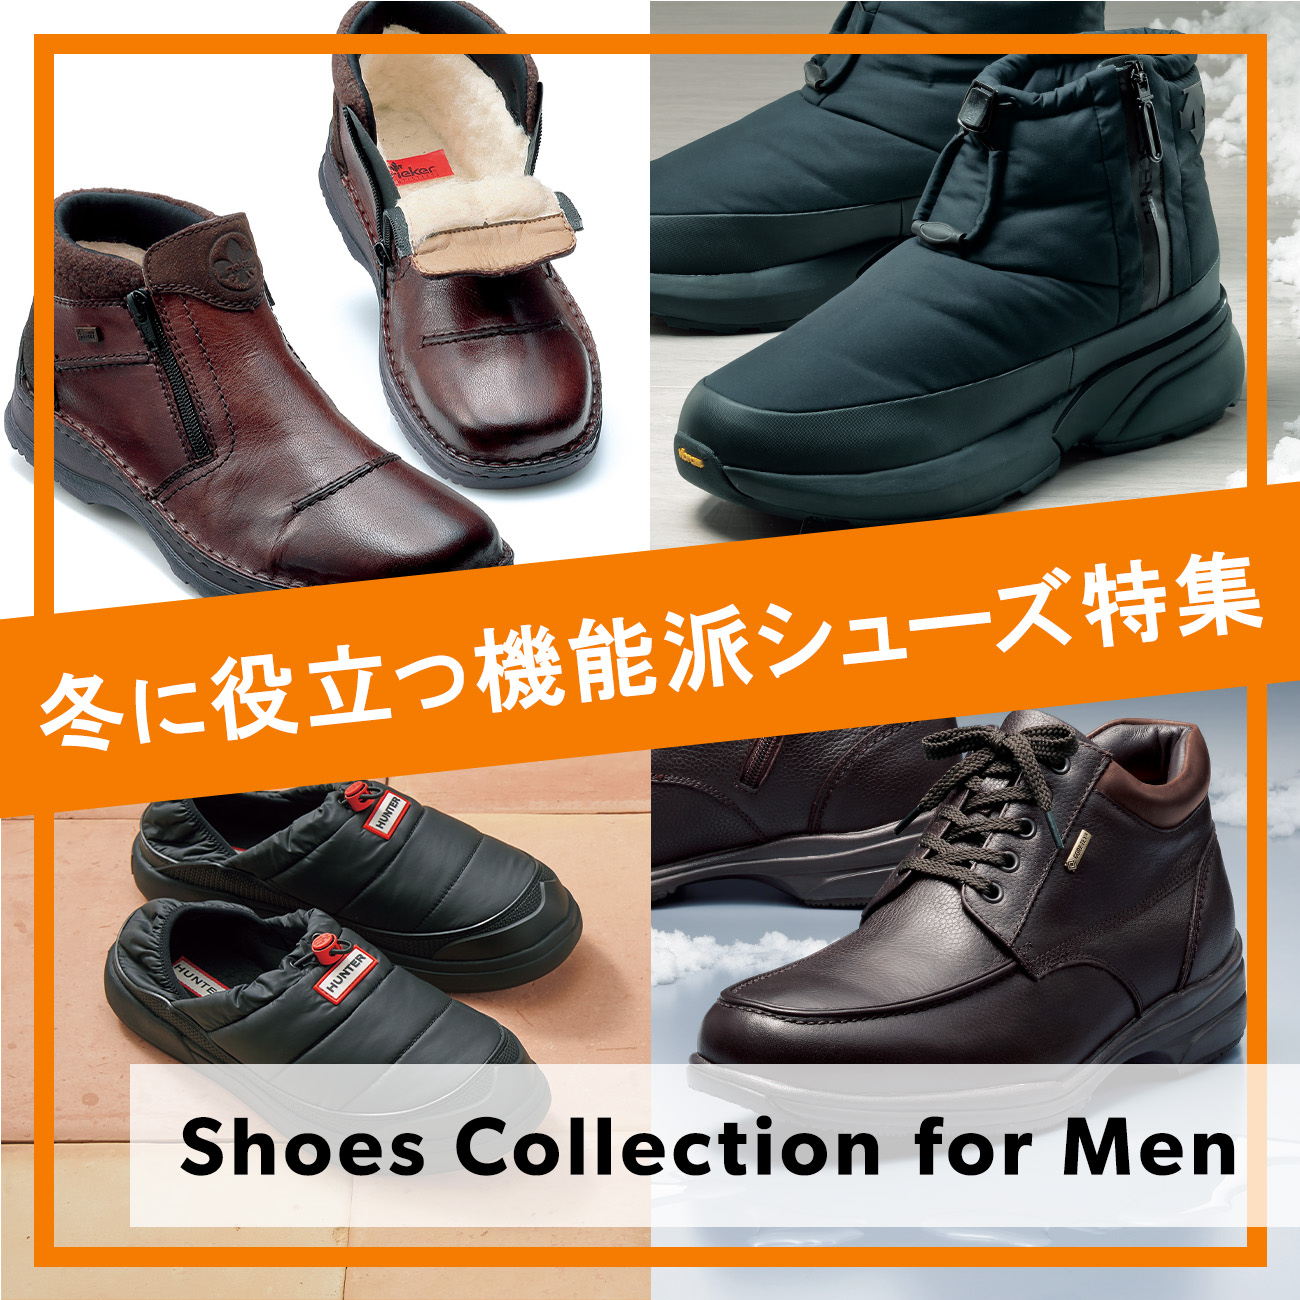 【特集】Men's Shoes Collection